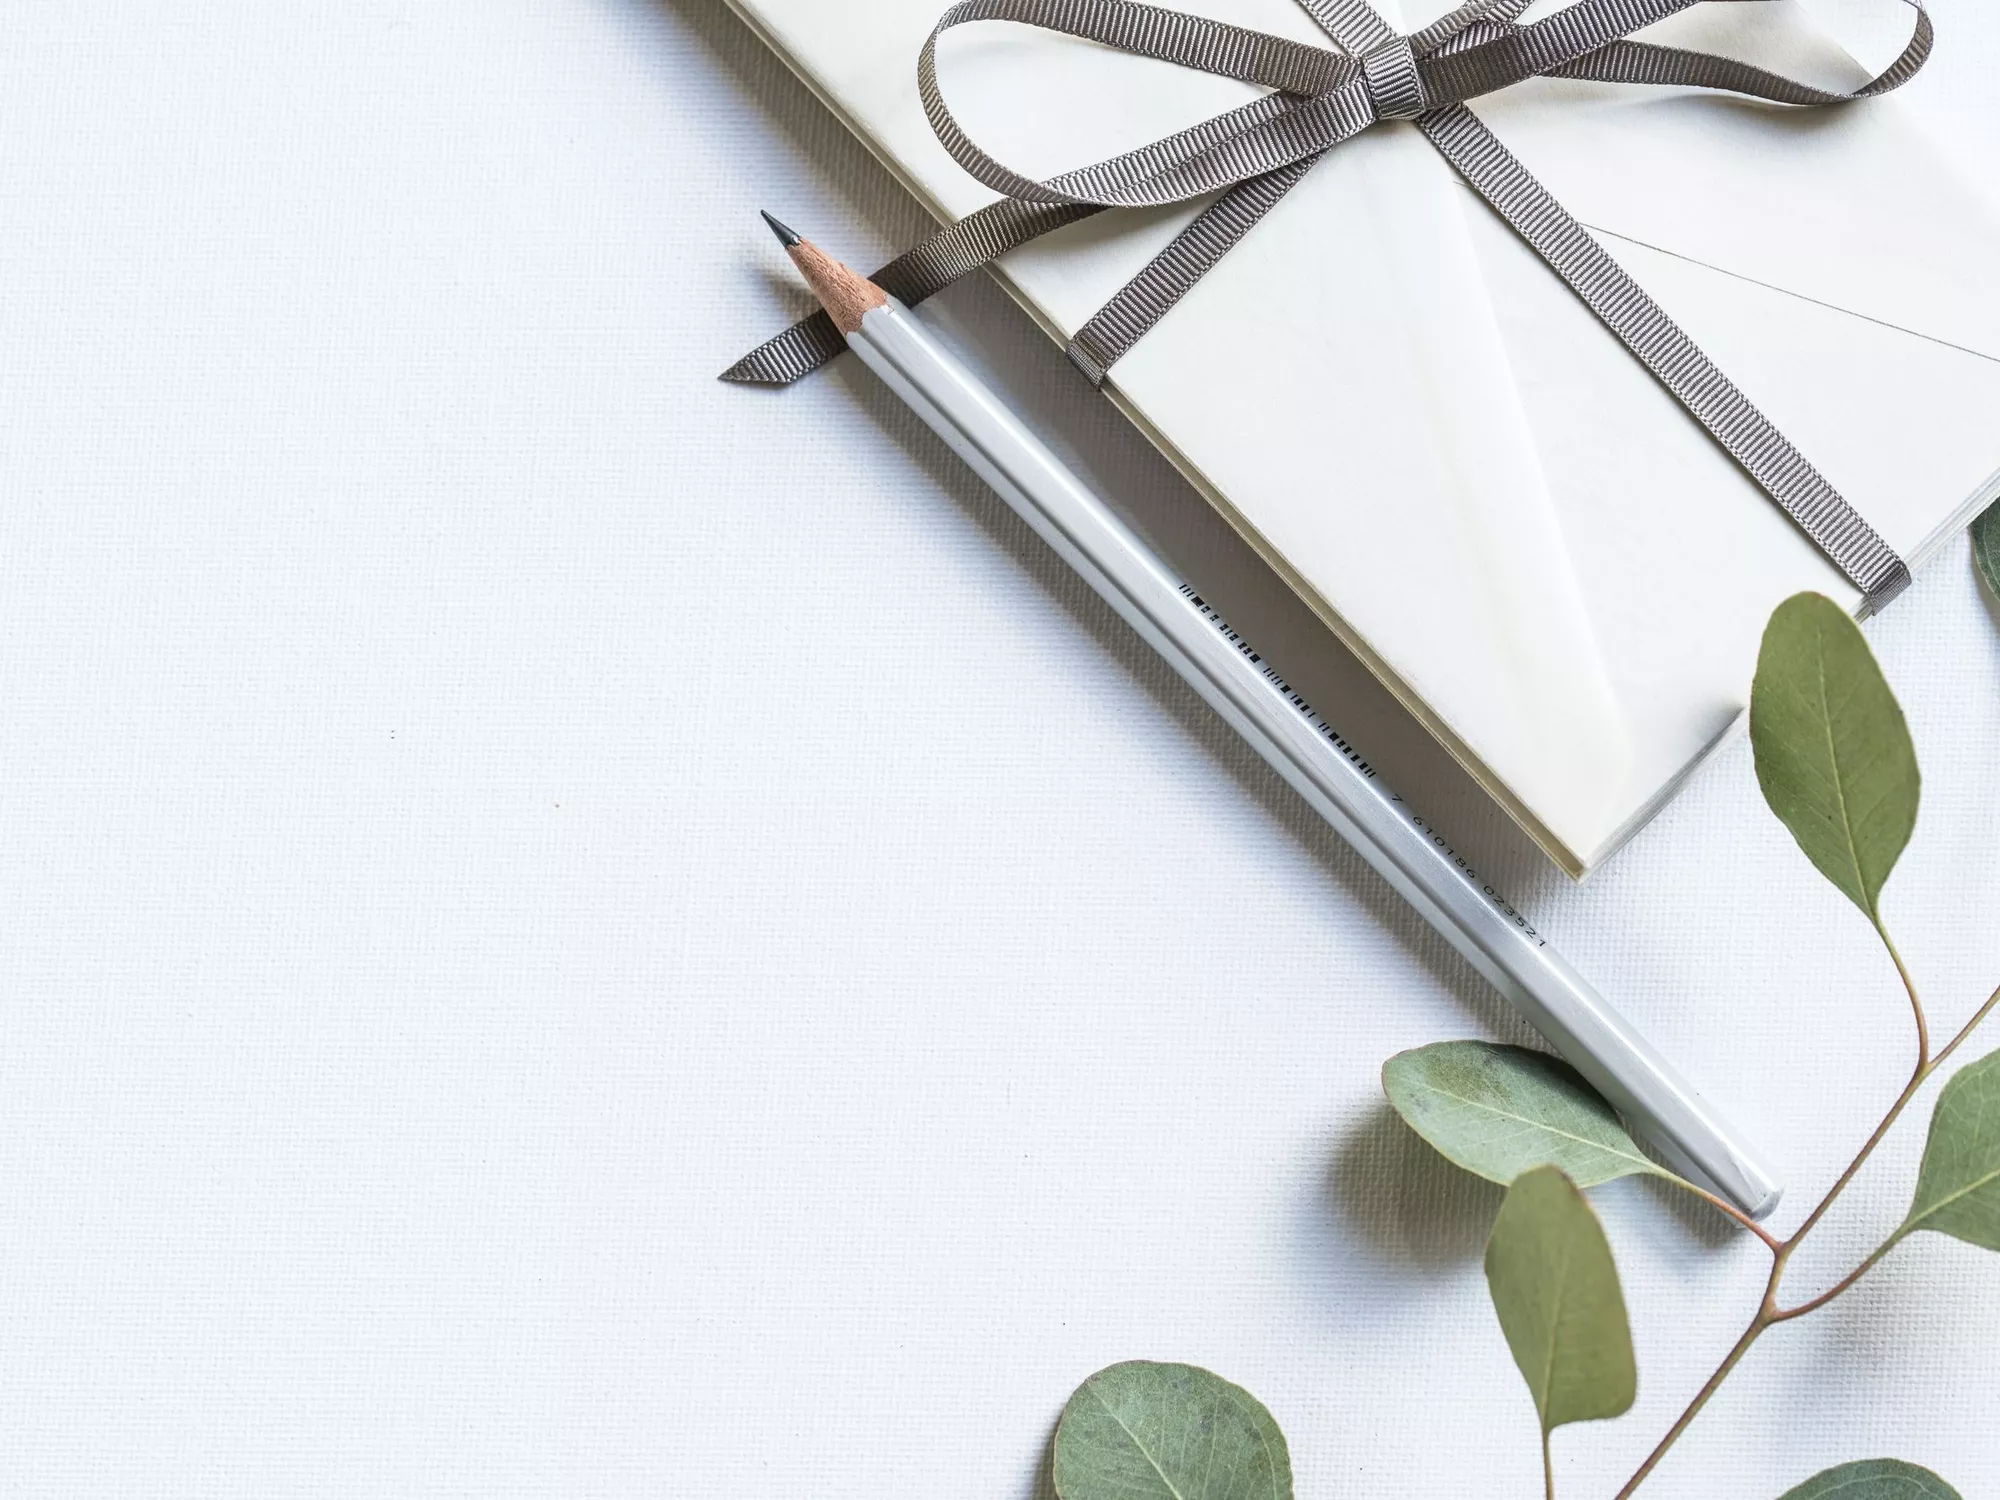 Weisses Kuvert mit Geschenksband, einem Bleistift und einem Zweig mit grünen Blättern zur Veranschaulichung eines Gutscheins (c) Foto Joanna Kosinska / Unsplash